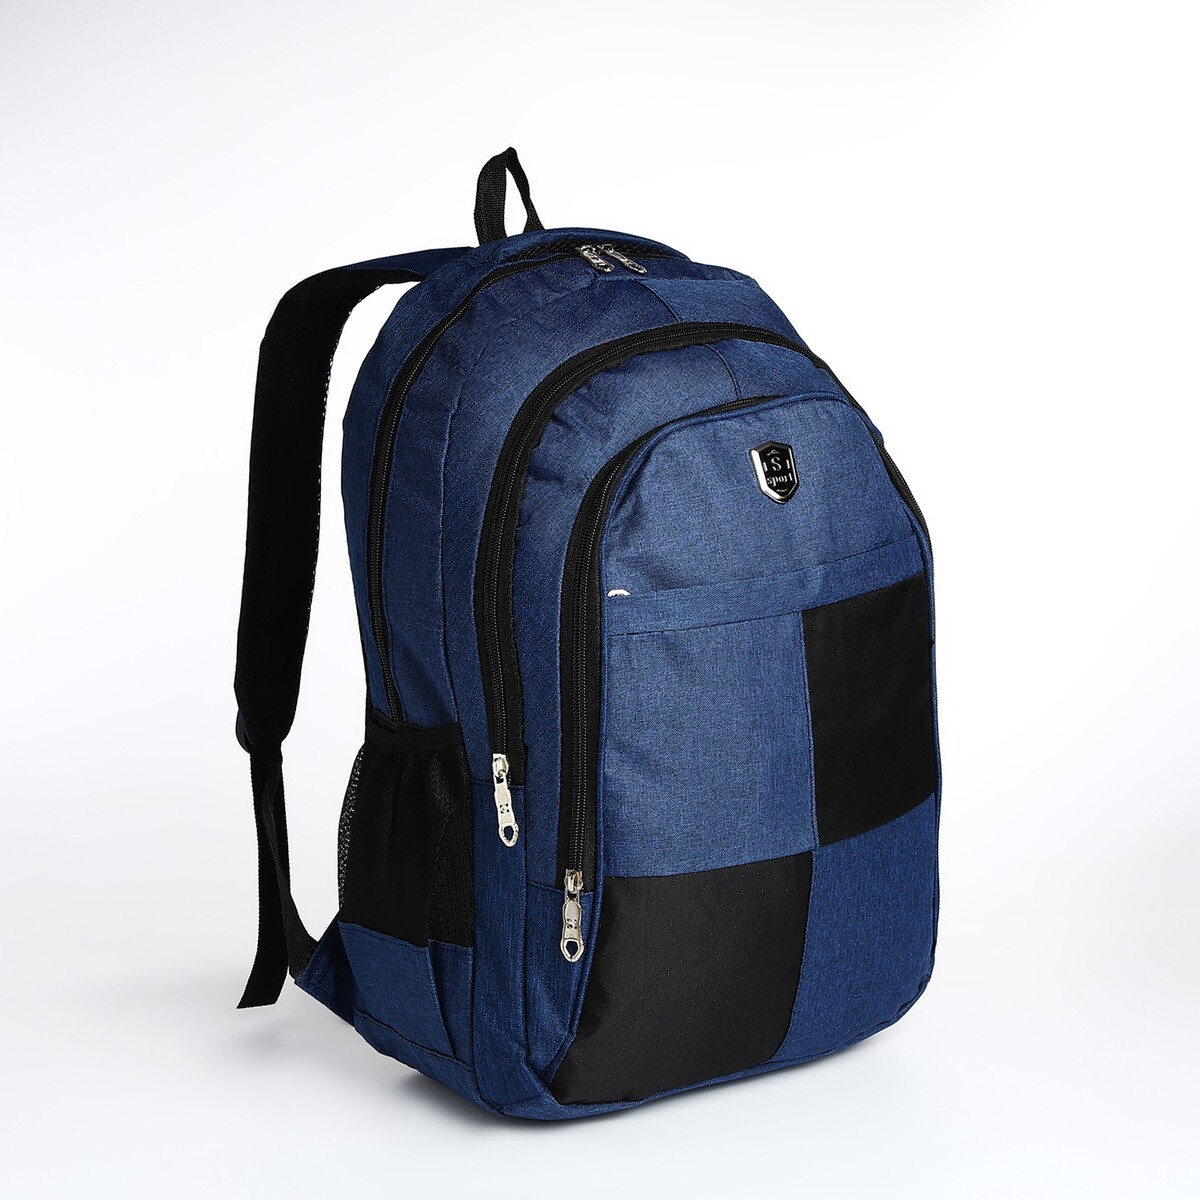 Рюкзак молодежный из текстиля, 2 отдела, 4 кармана, цвет синий рюкзак молодежный из текстиля 2 отдела на молнии 3 кармана синий